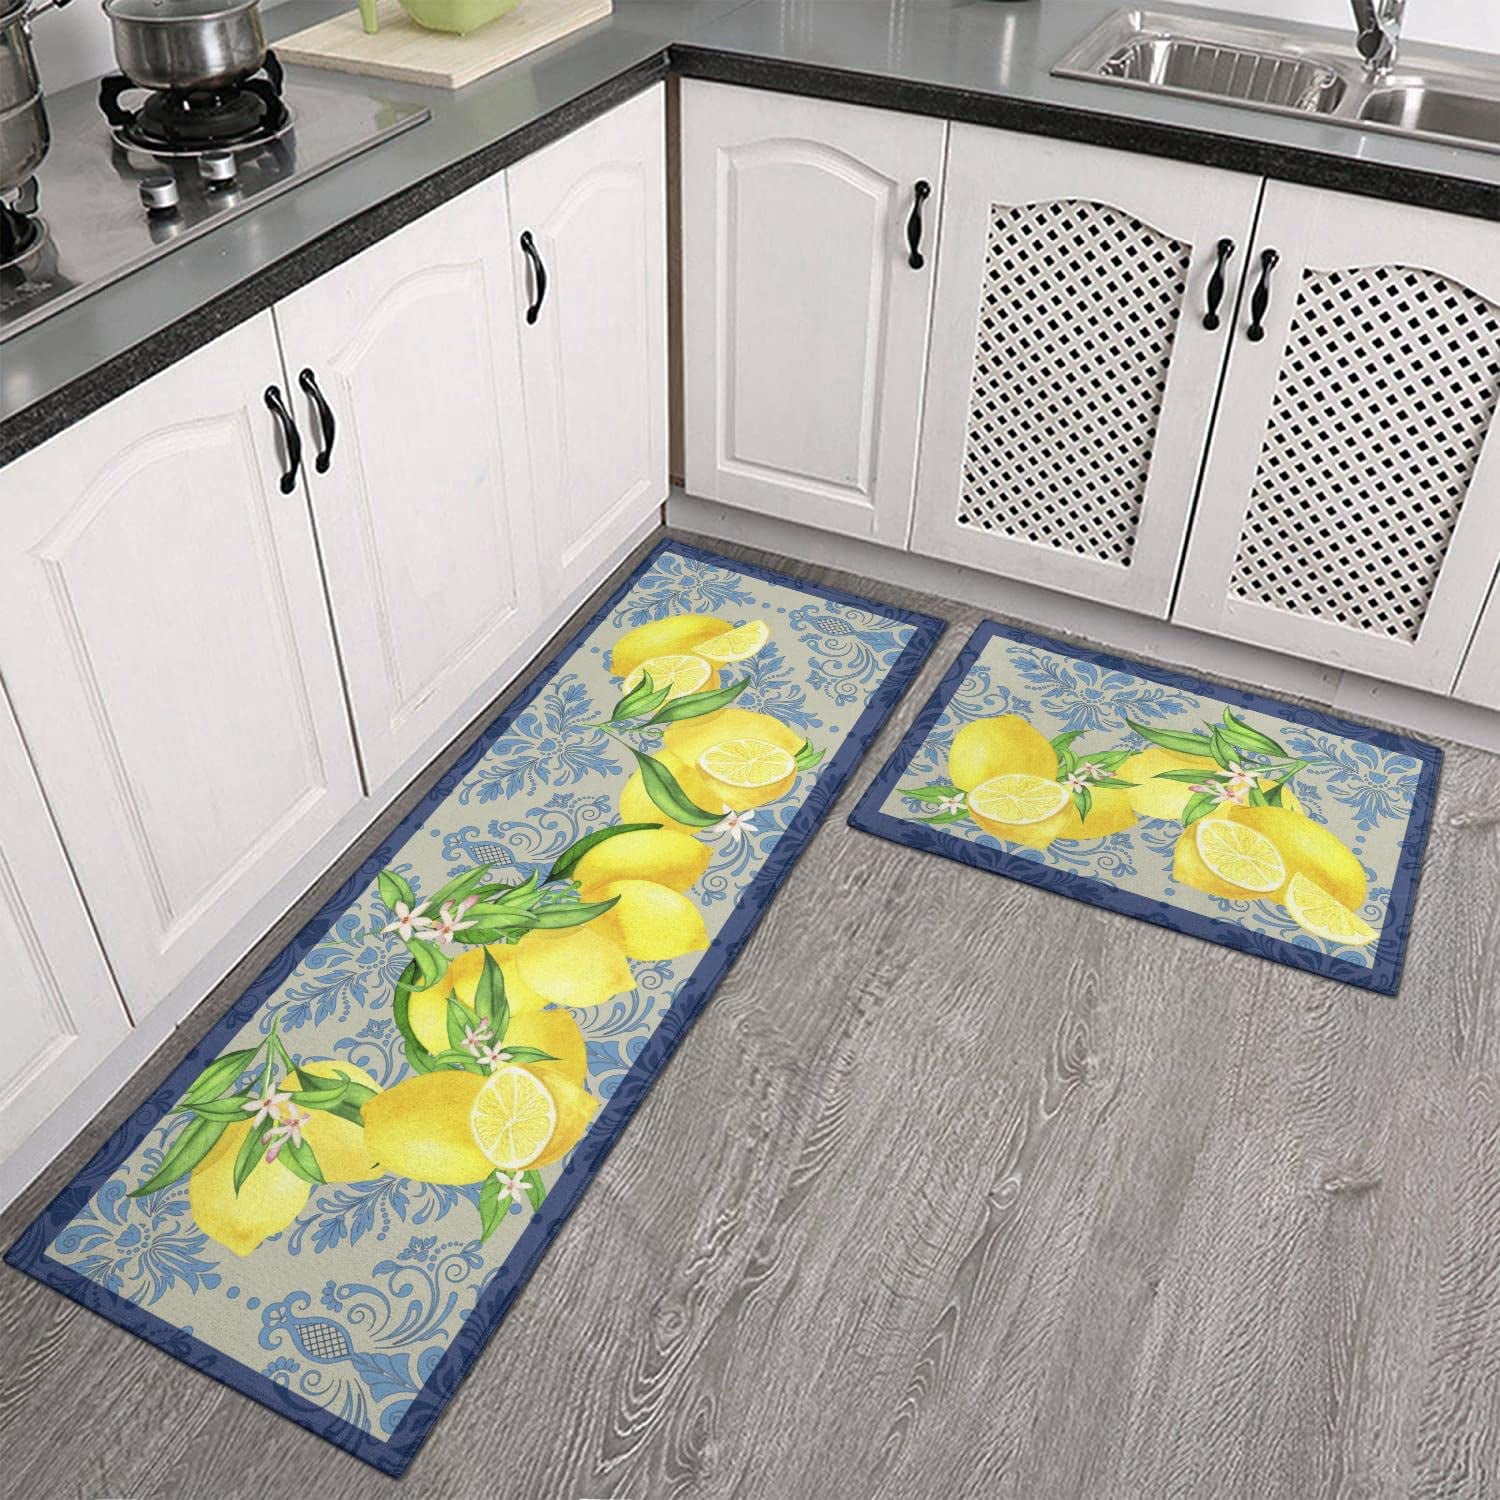 Ideal Restaurant Floor Mat Placement – Ultimate Mats